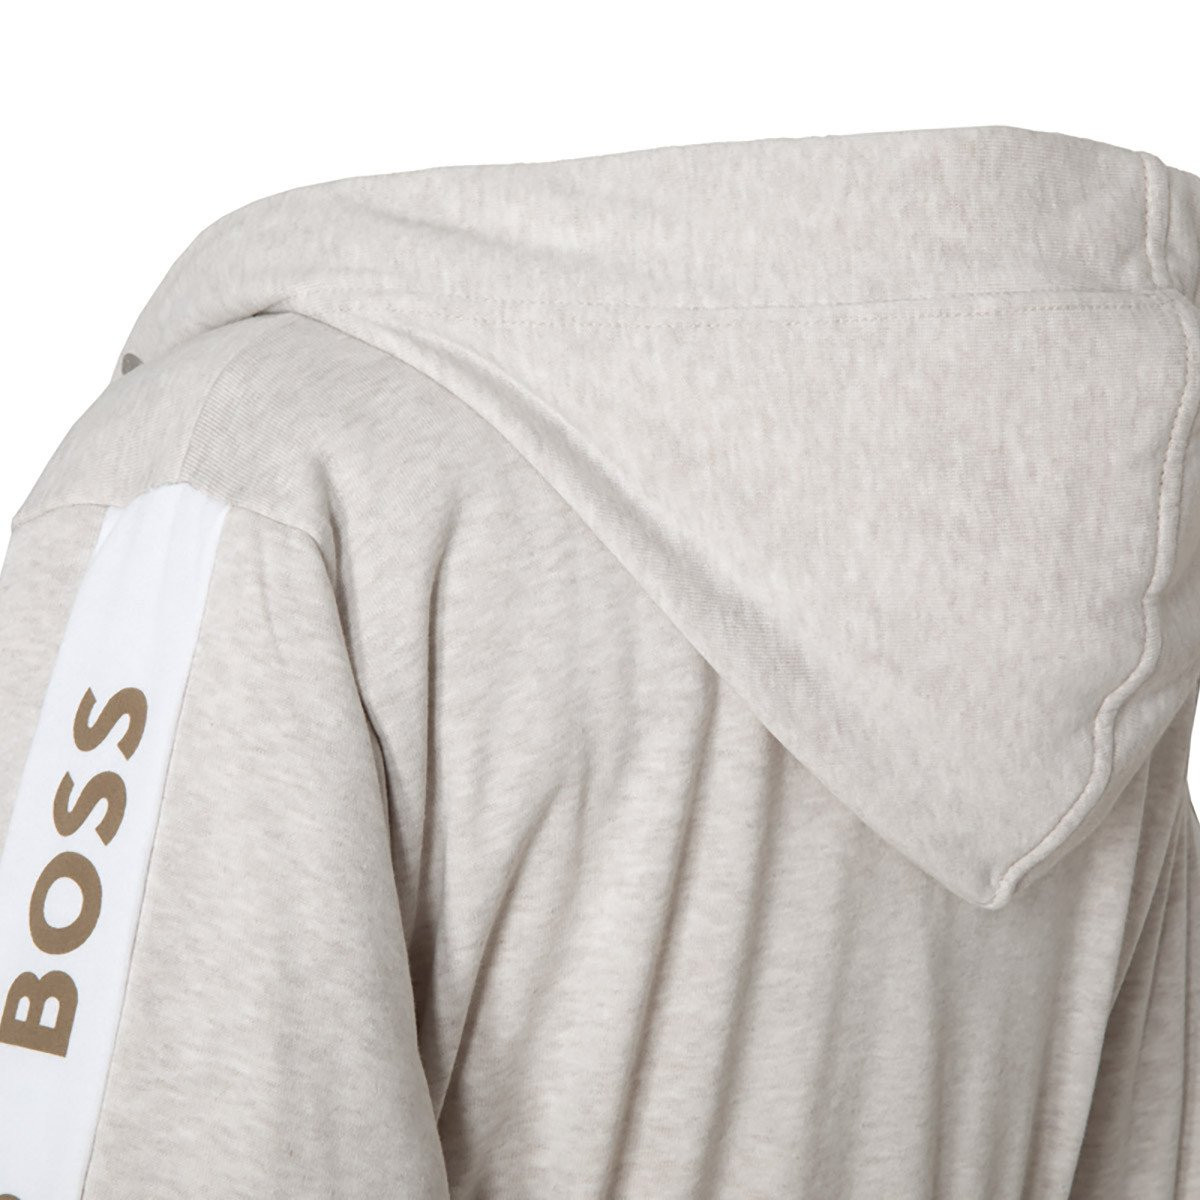 халат с капюшоном Hugo Boss Sense - купить в магазине Yves Delorme Russia